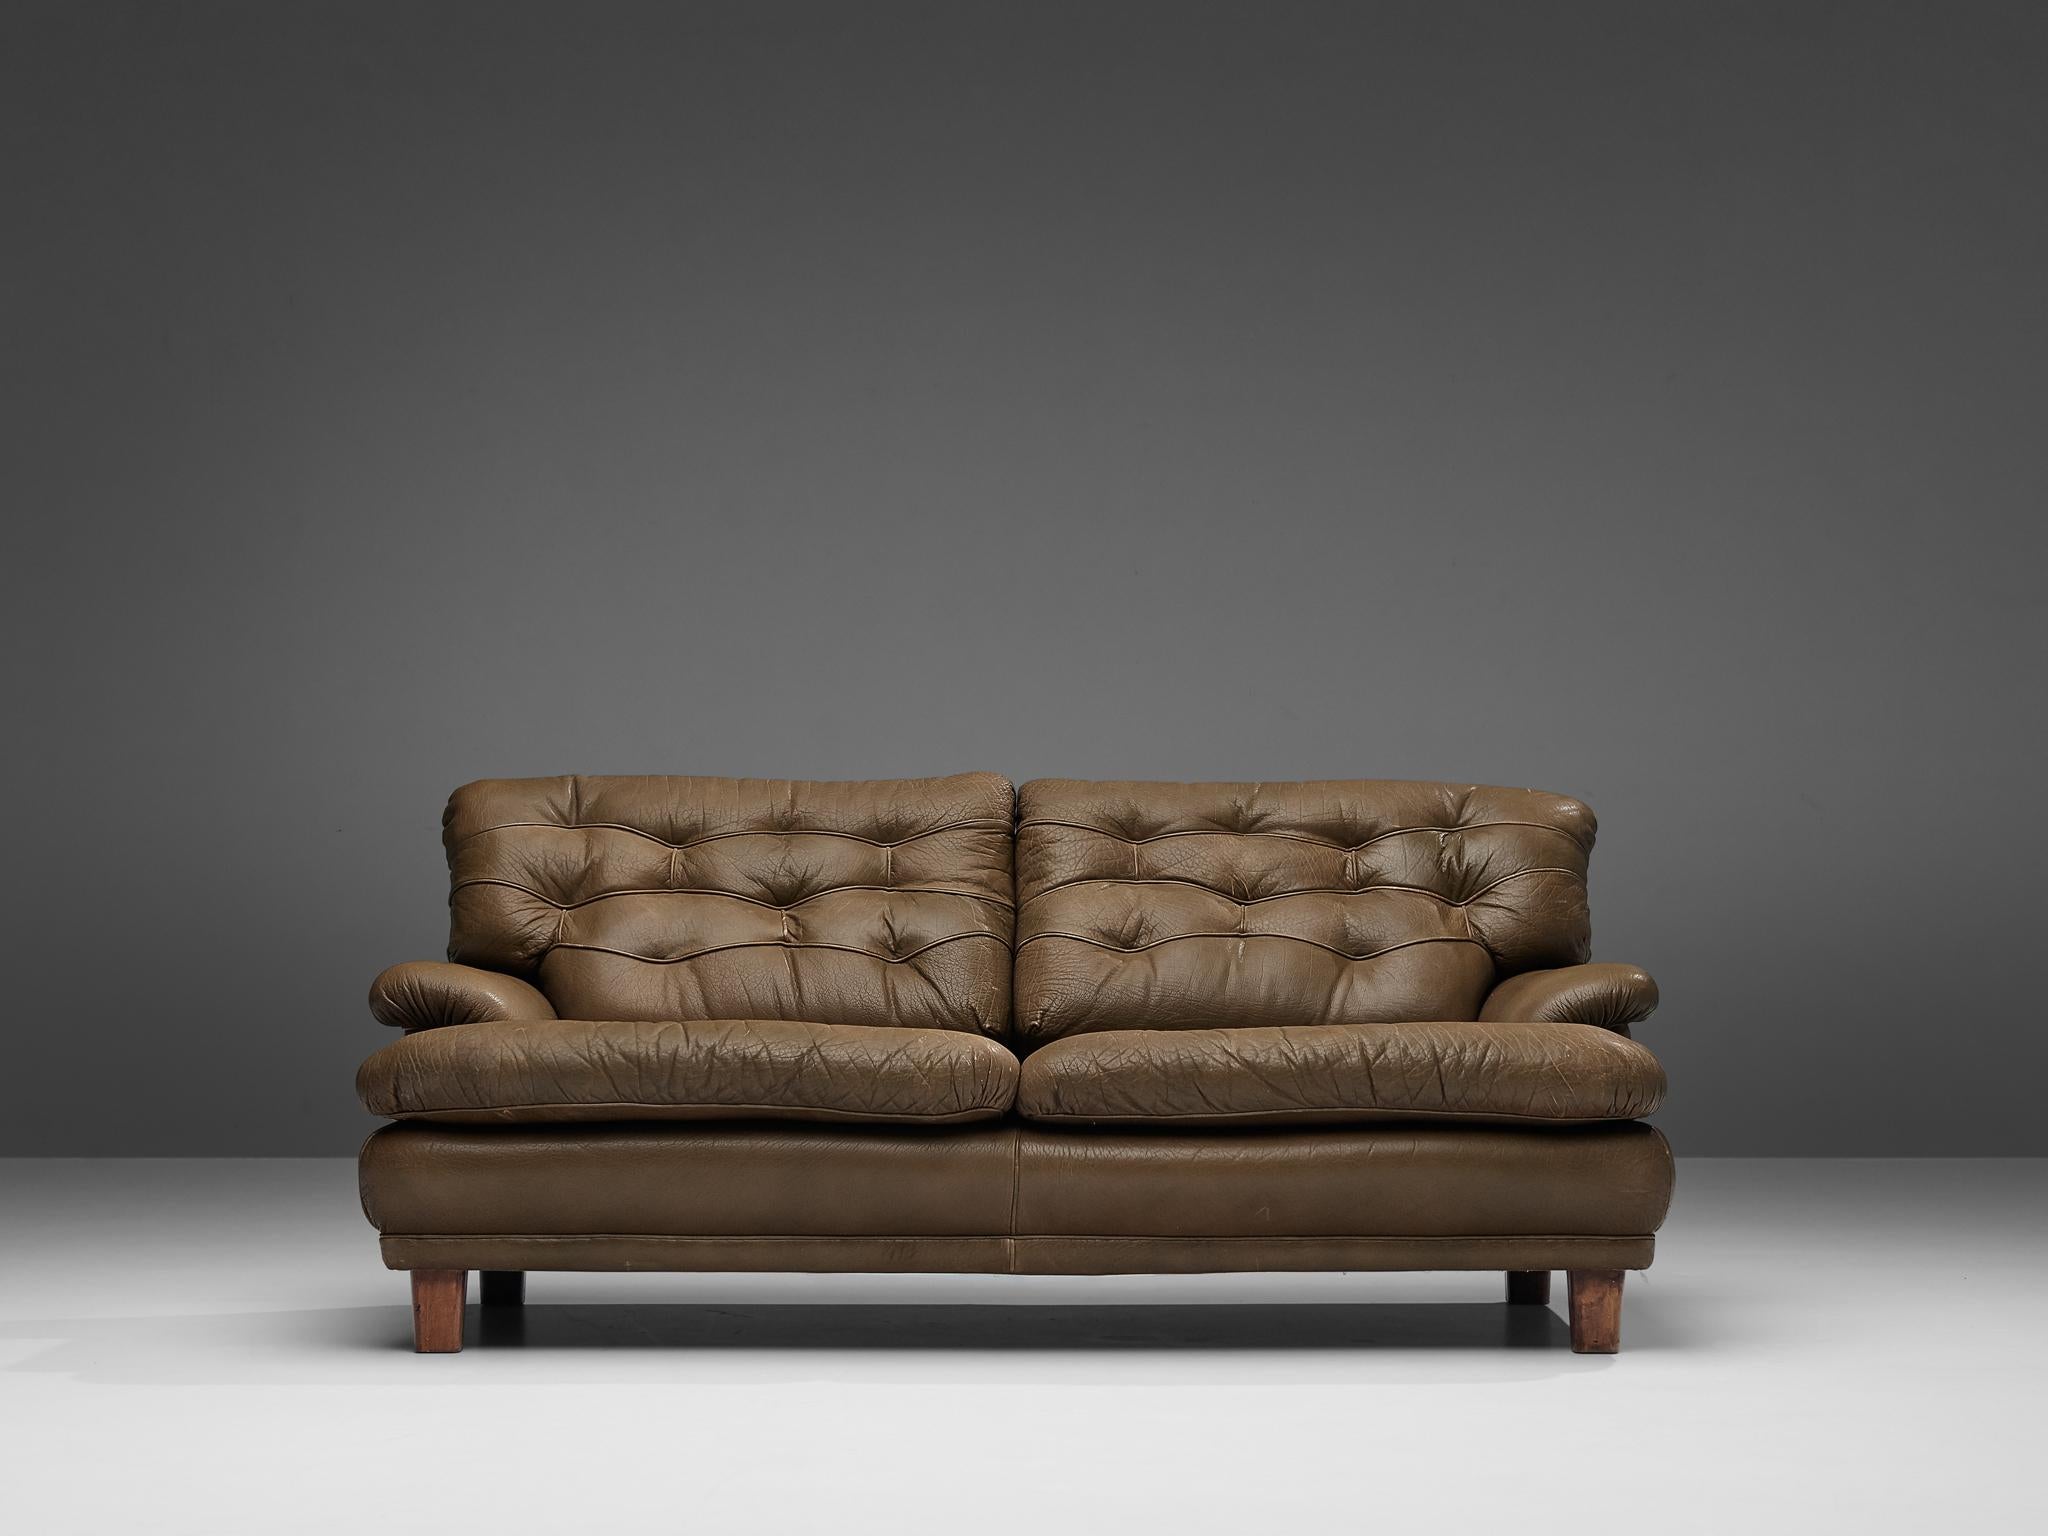 Arne Norells, canapé, cuir, bois, Suède, vers 1964.

Ce canapé est raffiné, moderne et robuste. Un véritable design suédois et Norells. Il est en cuir et comporte quatre pieds cubiques en bois. Ces pieds offrent une base équilibrée au caractère